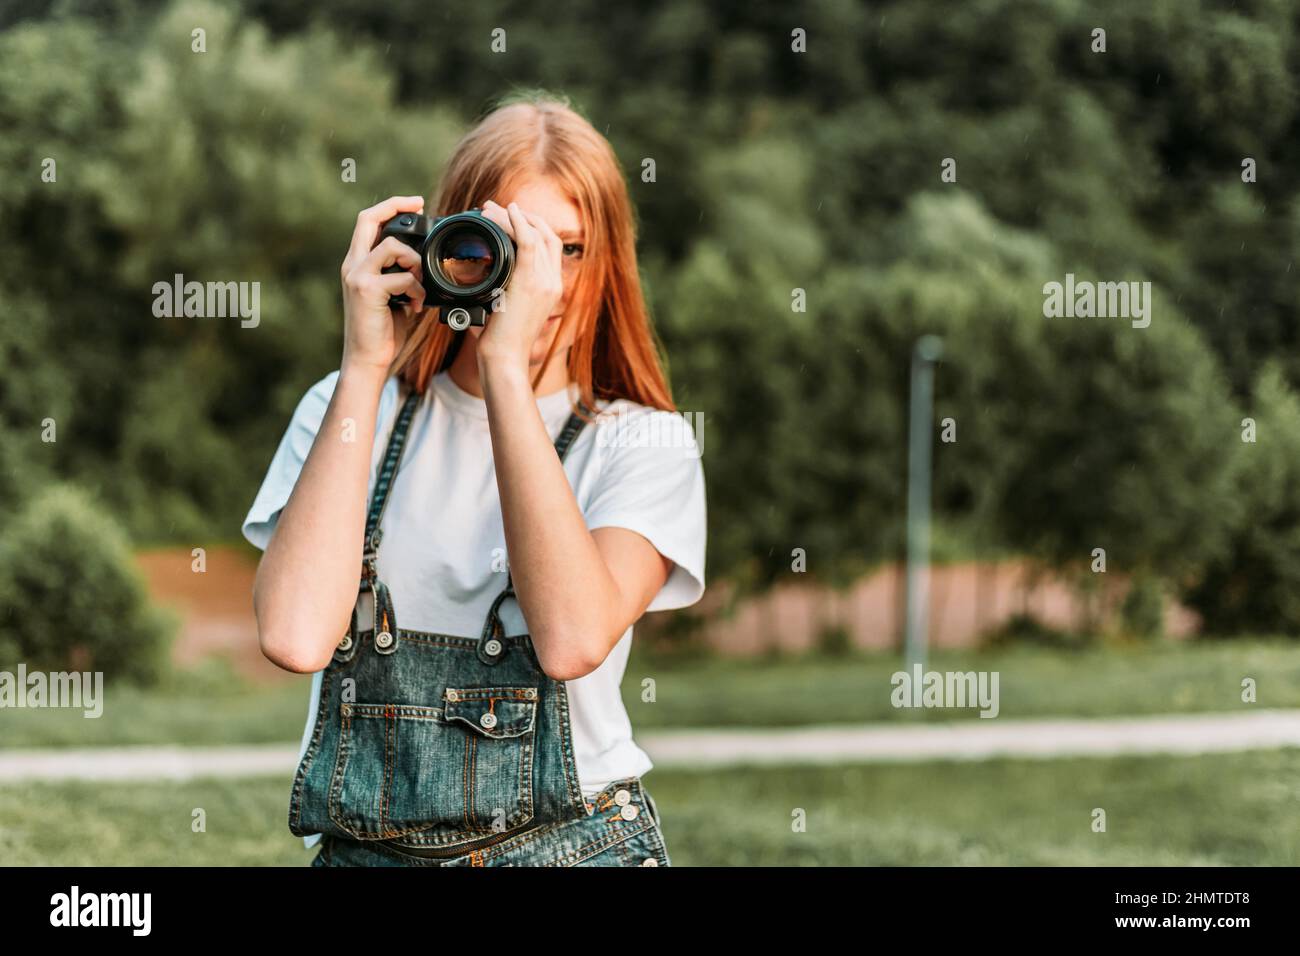 Ingwer teen, Mädchen, das Fotos mit Kamera. Speicherplatz kopieren Stockfoto